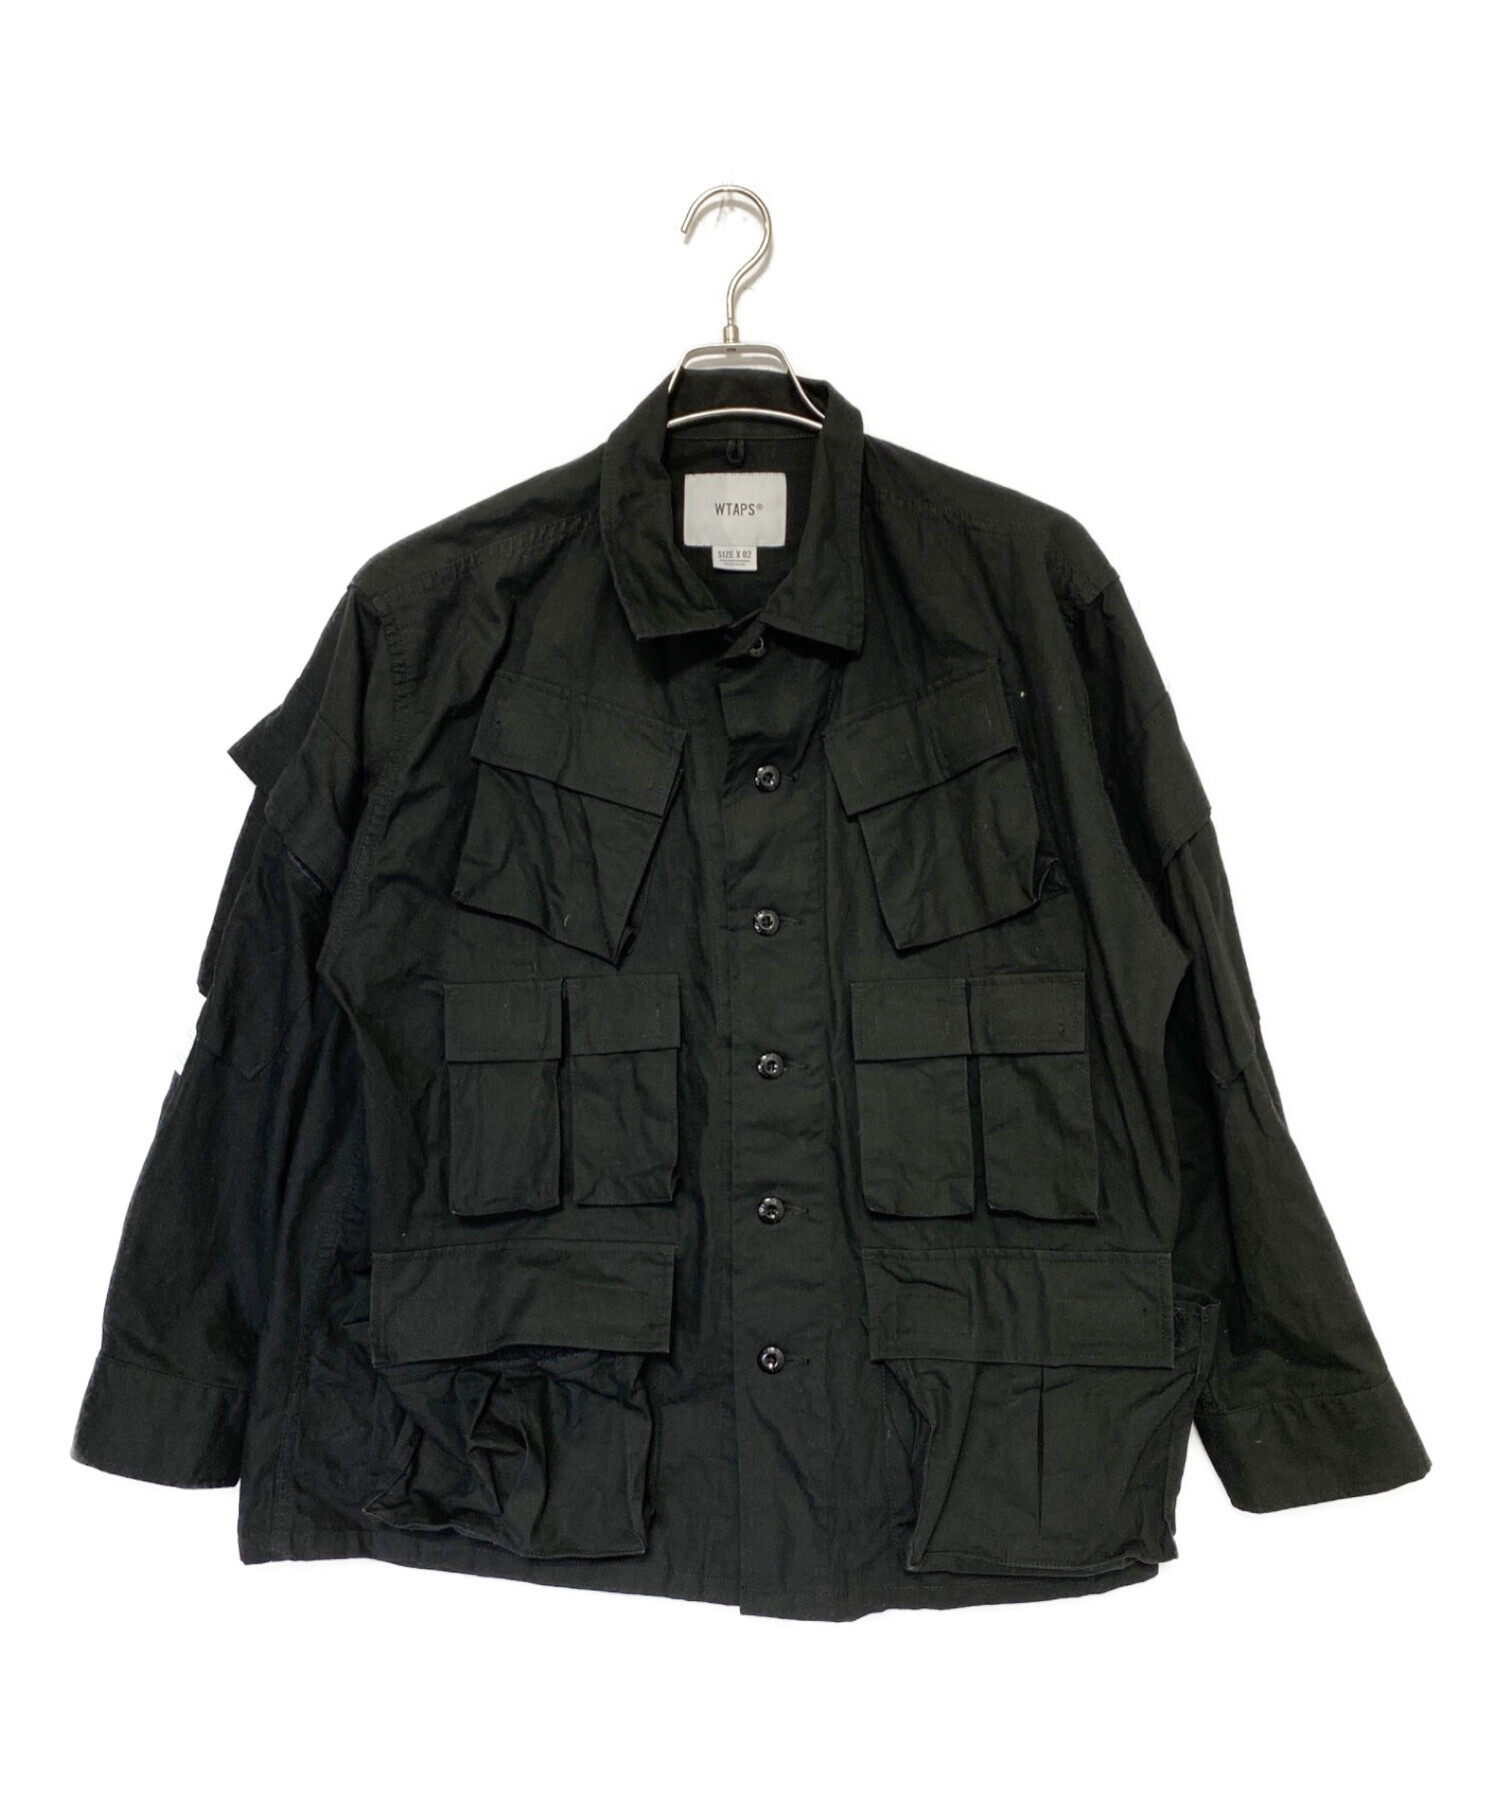 専用)Wtaps black shirts jacket size 02 www.datatekpacific.co.nz